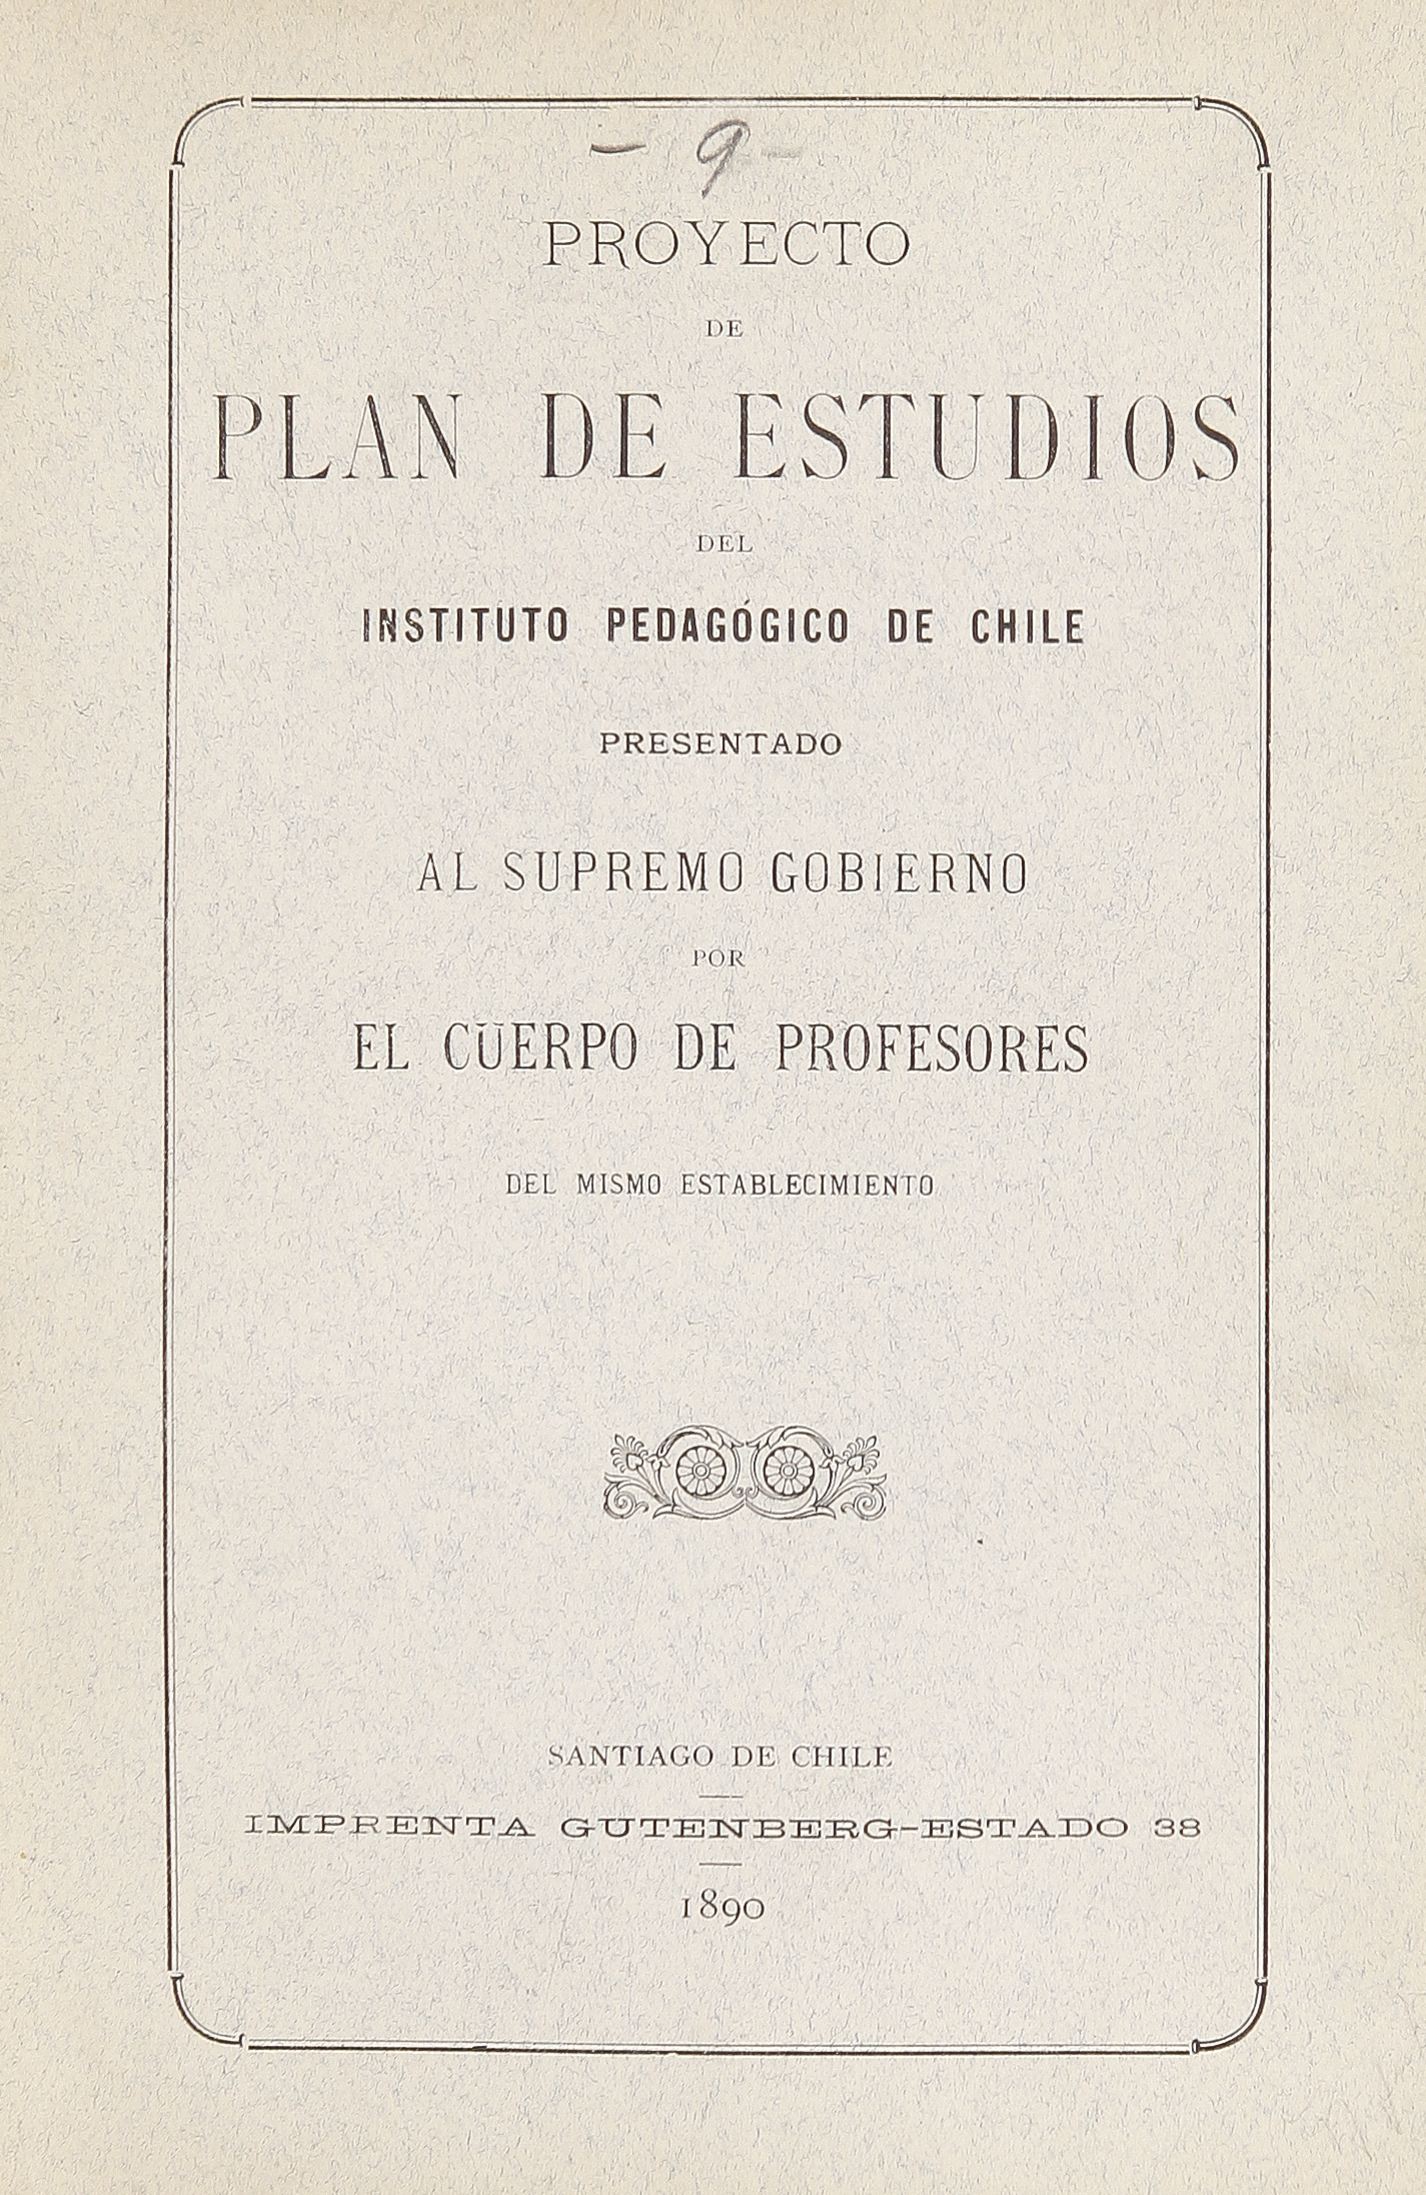 Proyecto de plan de estudios del Instituto Pedagógico de Chile: presentado al Supremo Gobierno por el cuerpo de profesores del mismo establecimiento, 1890.